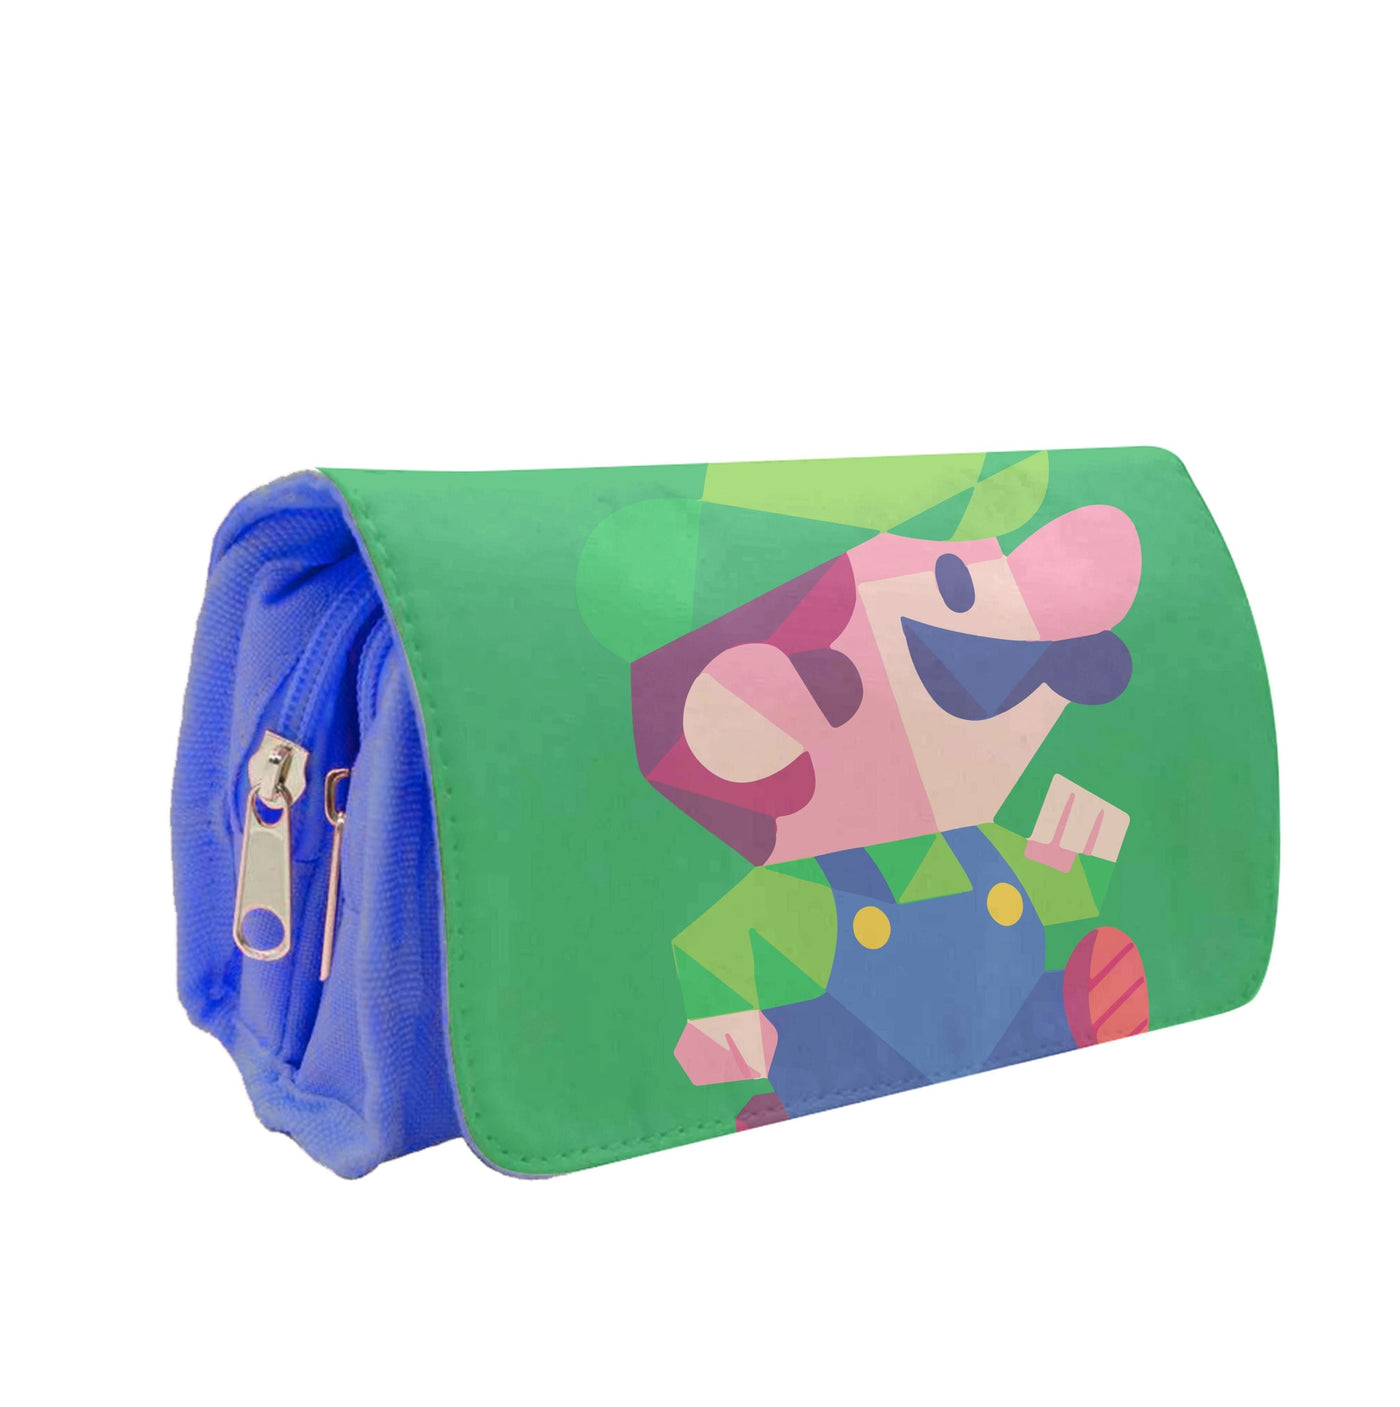 Running Luigi - Mario Pencil Case